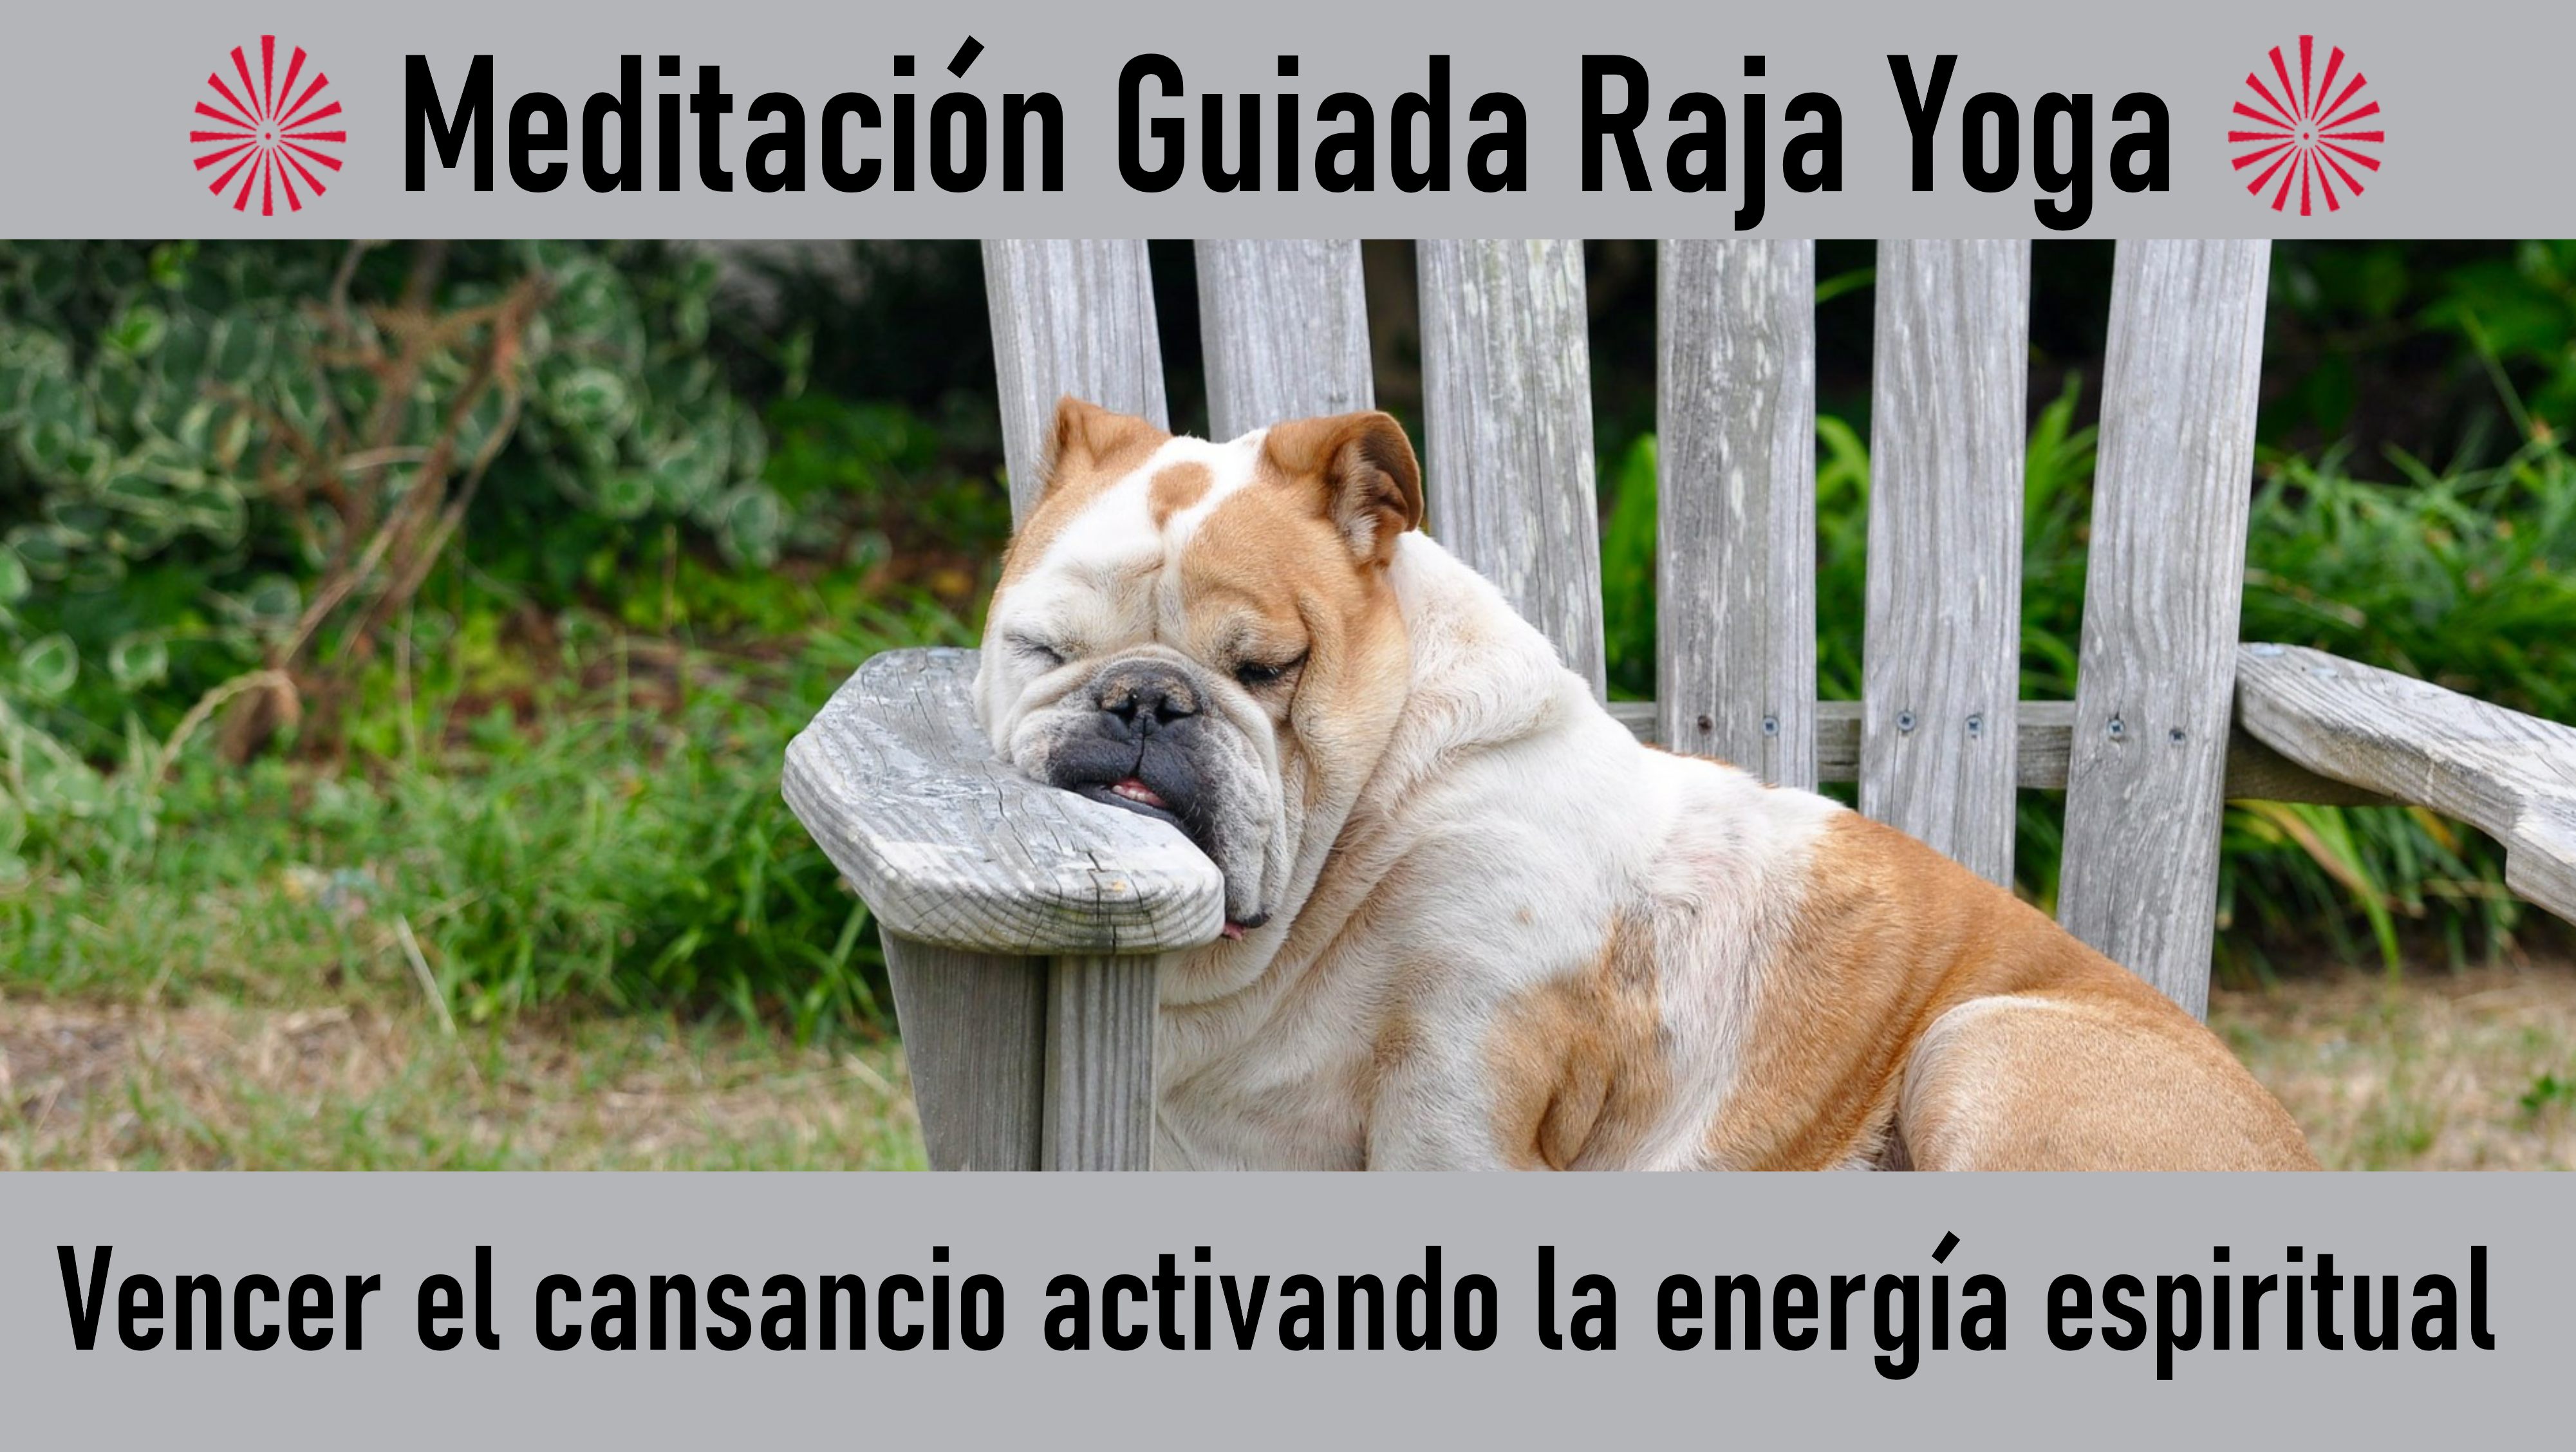 Meditación Raja Yoga: Vencer el cansancio activando la energía espiritual (16 Julio 2020) On-line desde Valencia